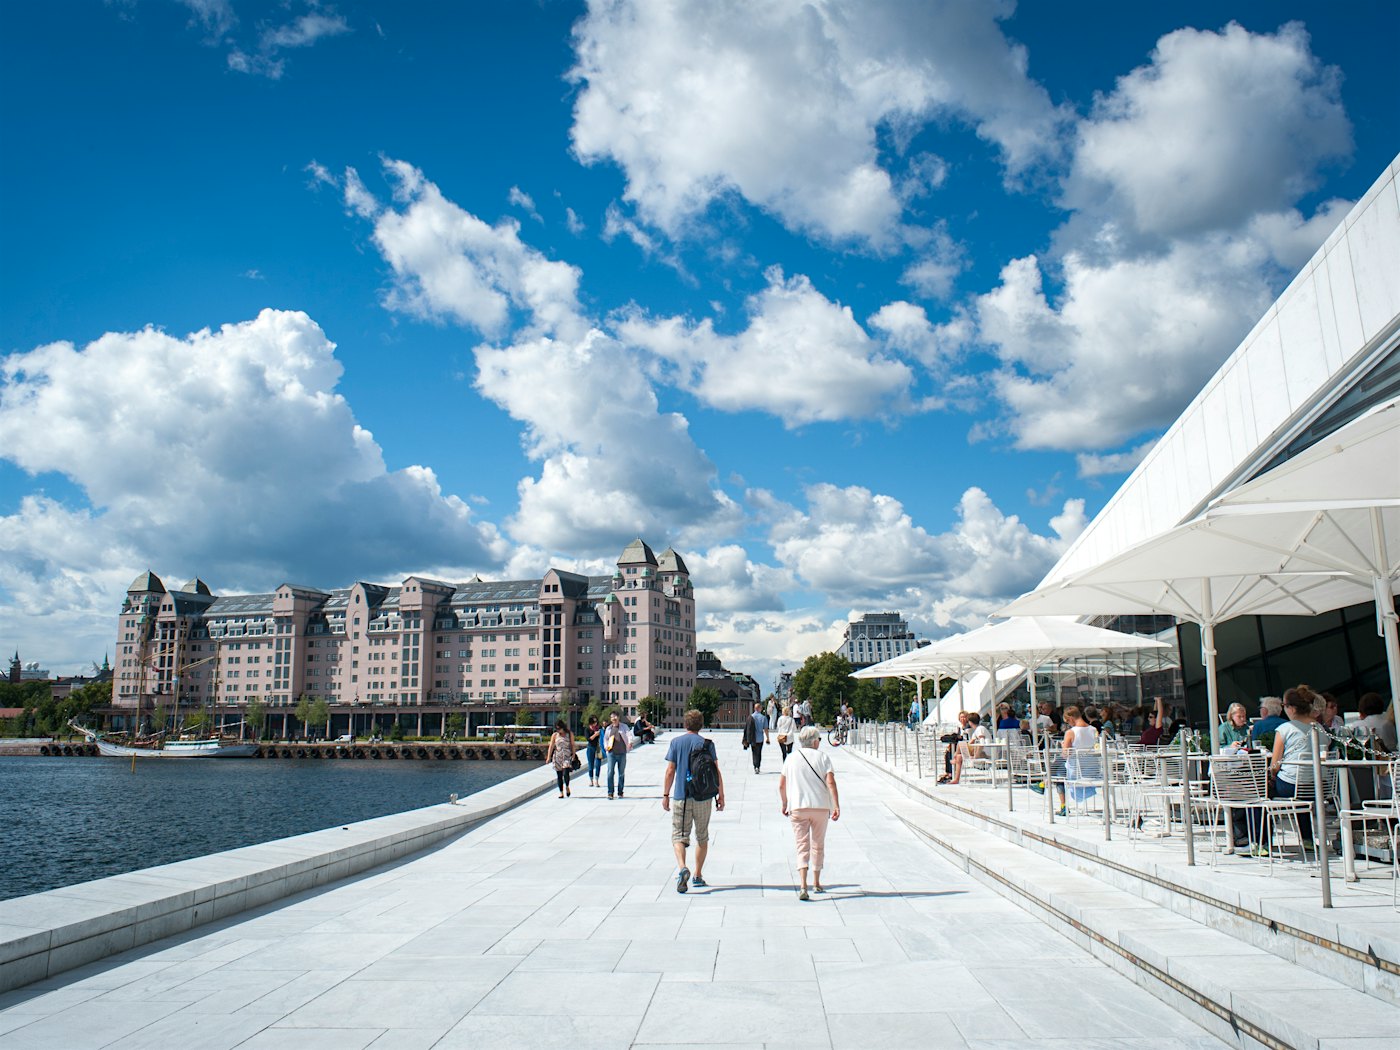 Passage aus weißem Marmor mit Opernhaus und Restaurant rechts und dem Oslofjord links. Menschen gehen in den Durchgang. Im Hintergrund sieht man die Stadt Oslo.